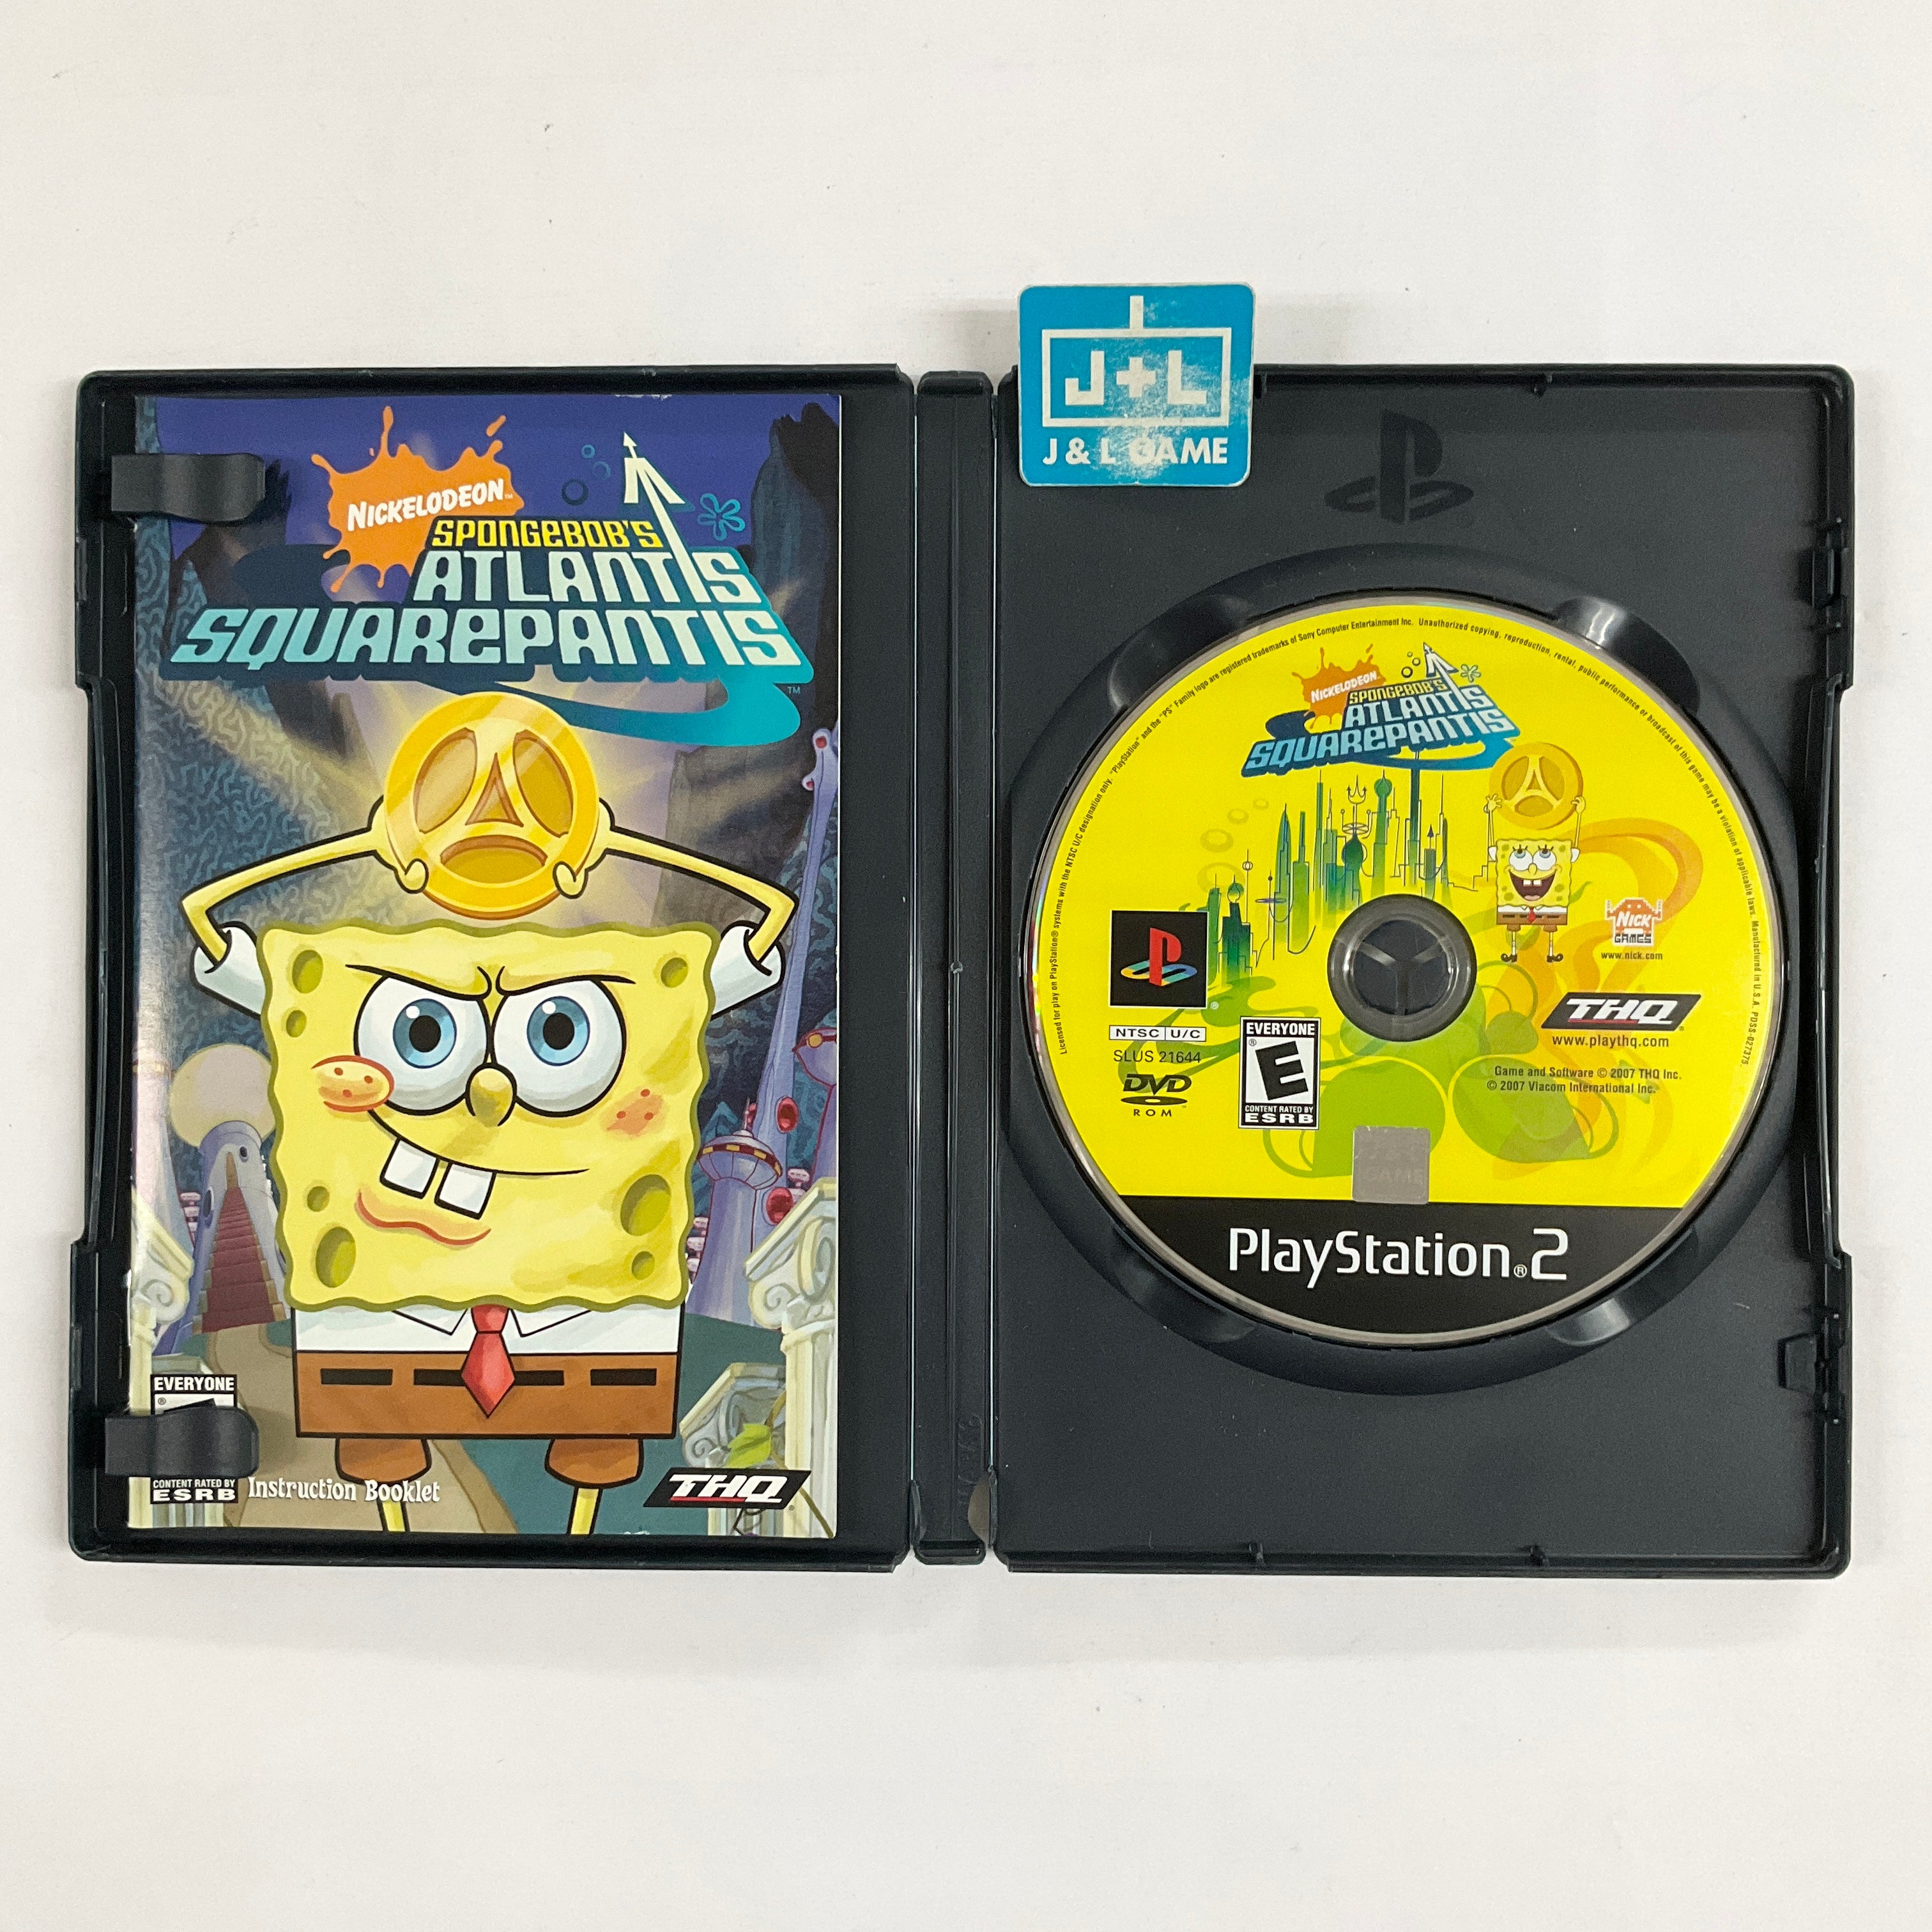 Spongebob Squarepants: Atlantis Squarepantis - (PS2) Playstation 2 [Pre-Owned] Video Games Nickelodeon   